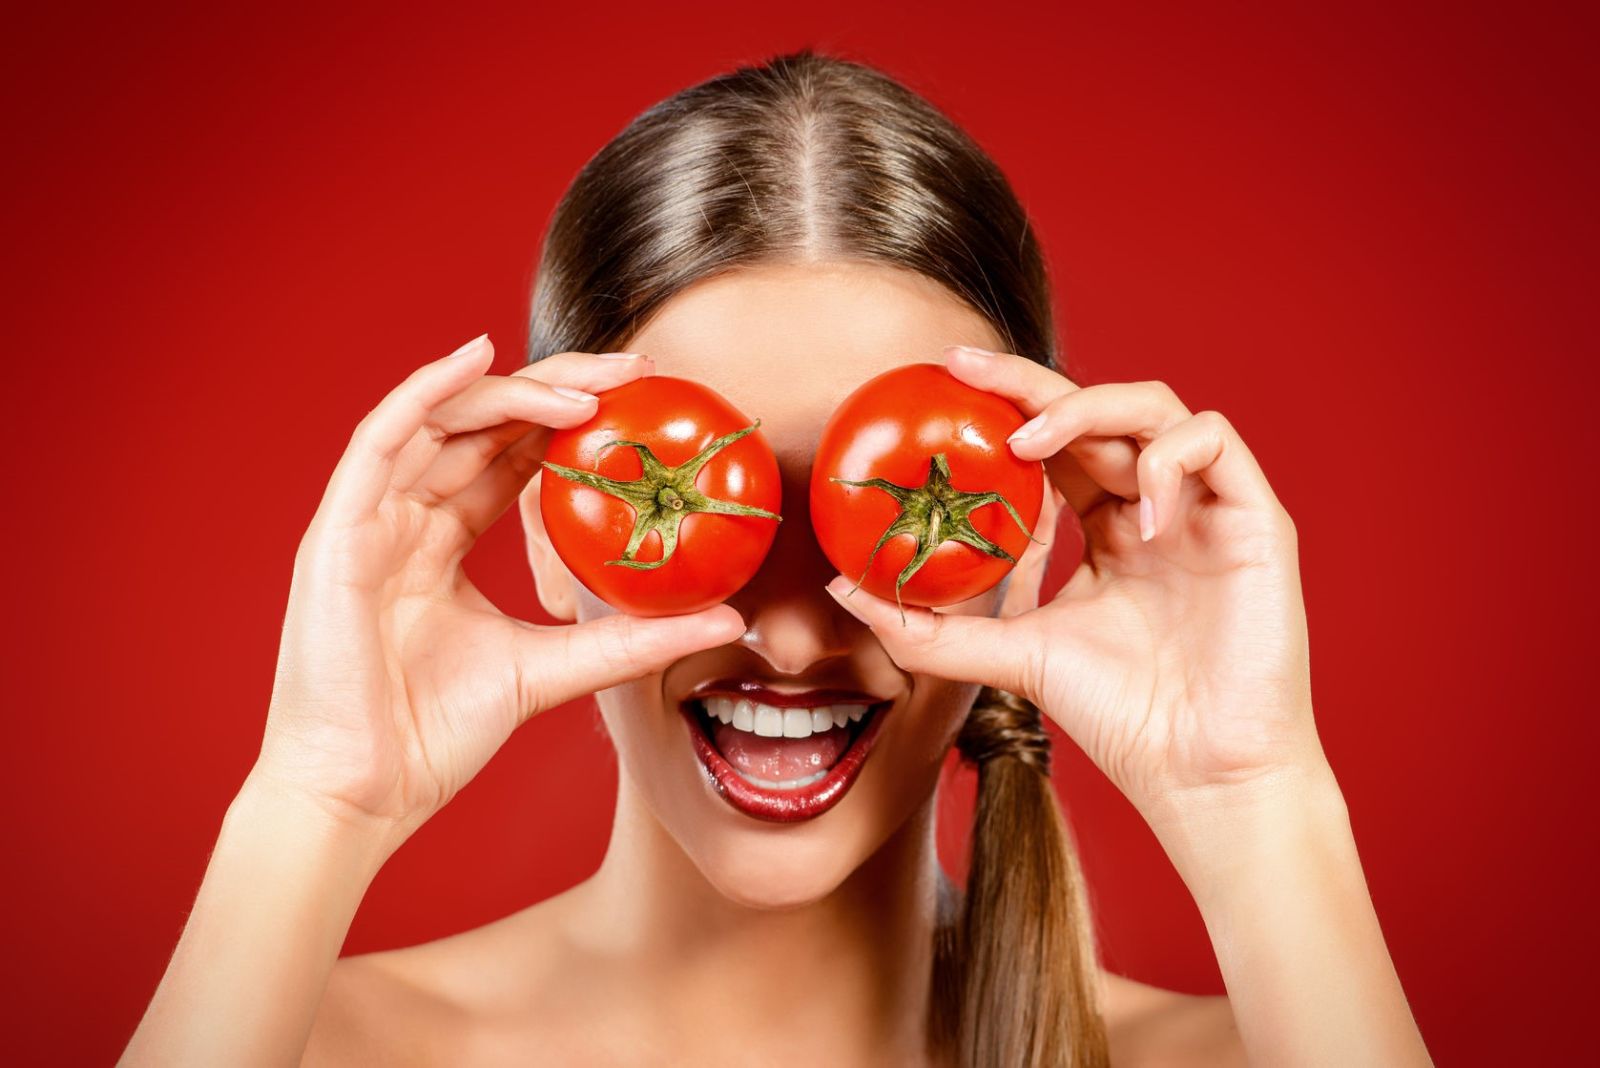 Bên cạnh đó cà chua còn có hàm lượng tinh chất chống oxy hoá cao có tác dụng chống lão hoá duy trì tuổi thanh xuân và tăng sức đề kháng cho da cũng như cơ thể.